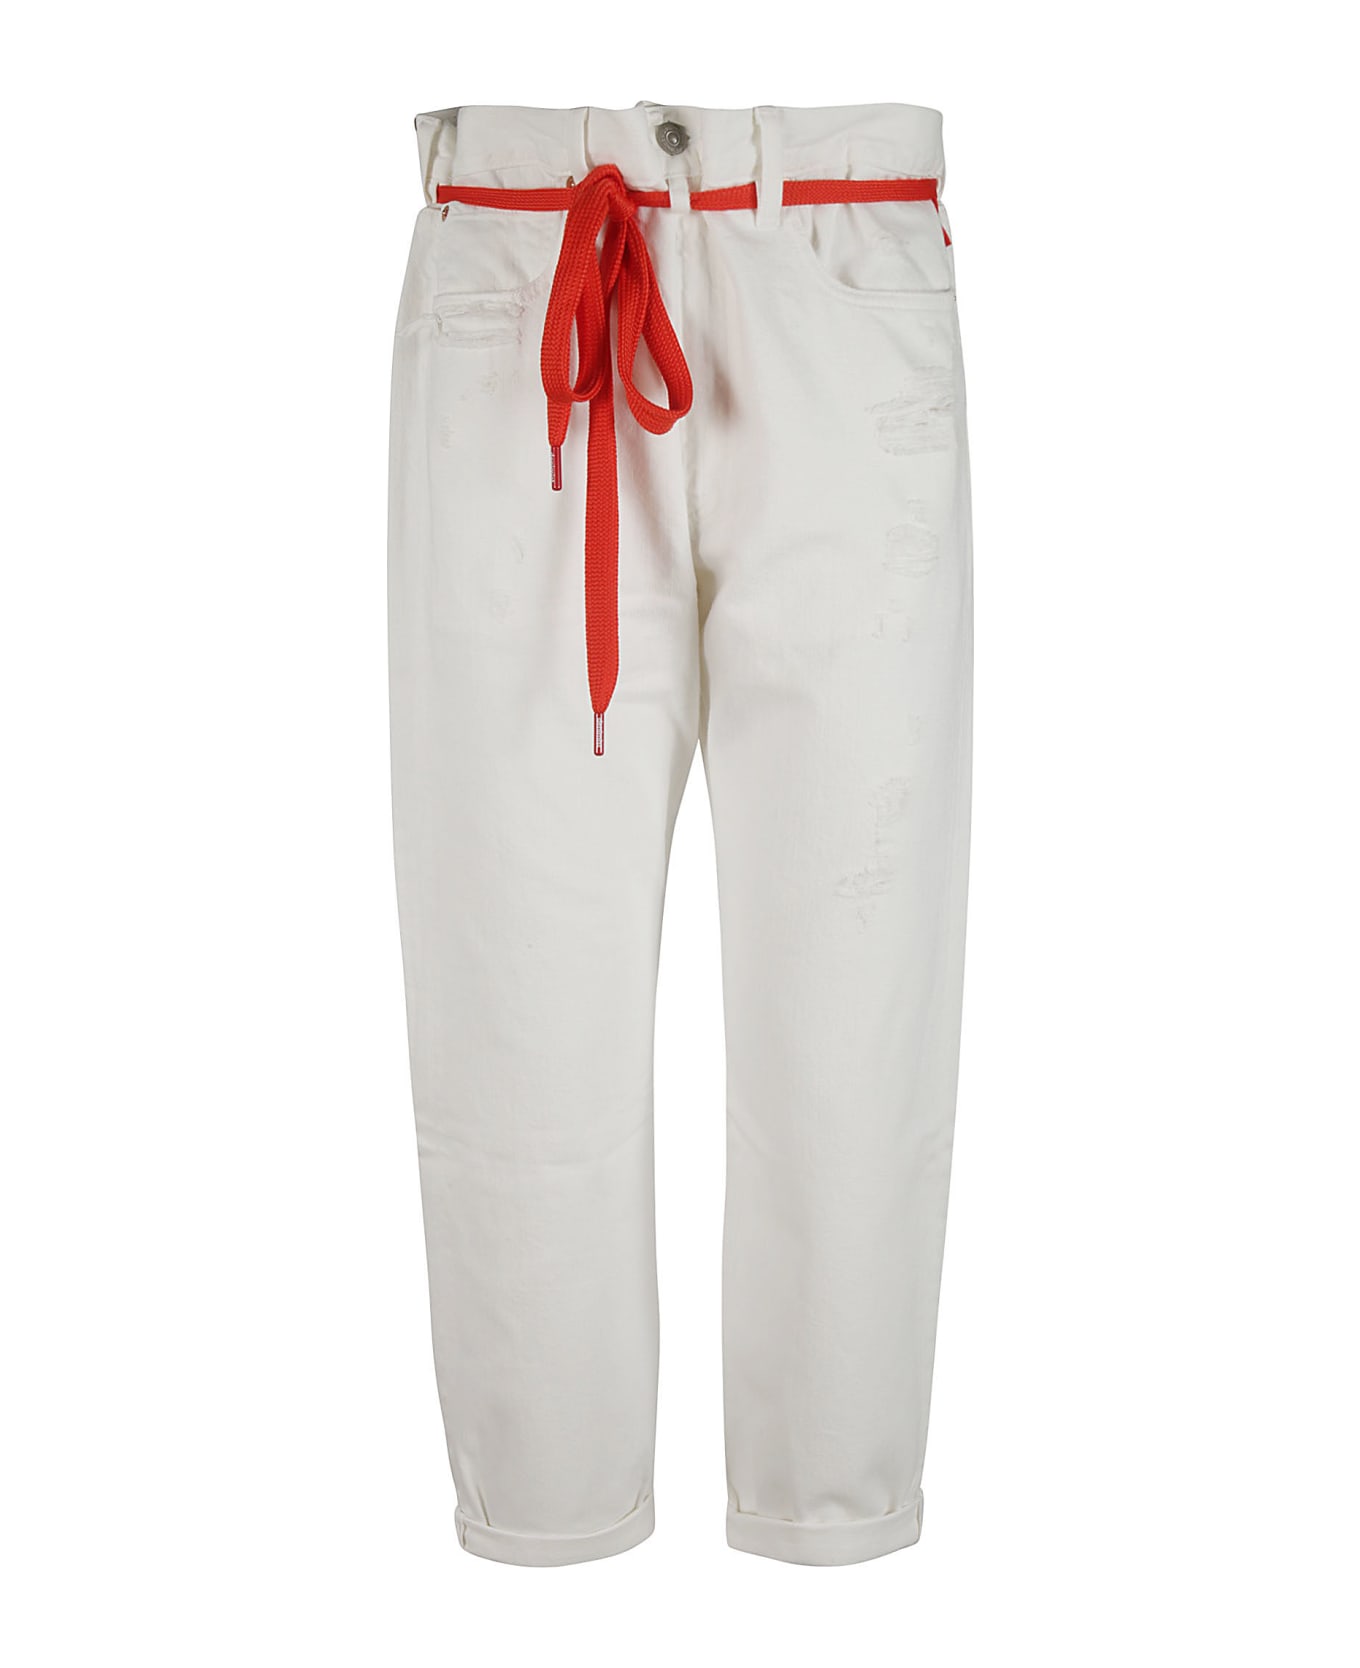 Denimist Harper Shoelace Jeans - White/Red